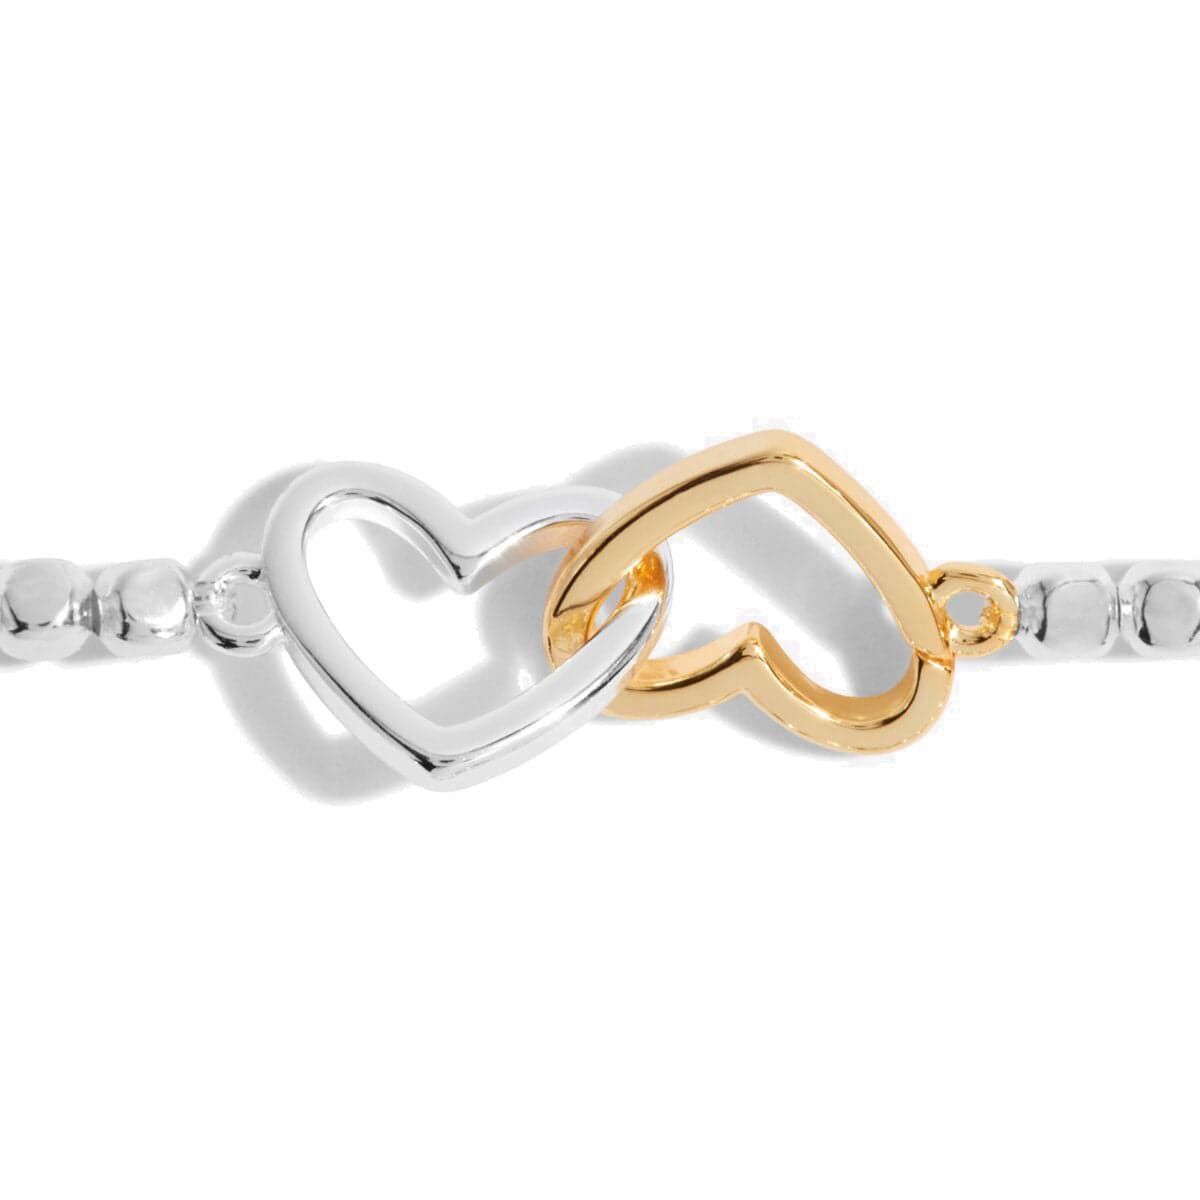 Joma Jewellery Bracelets Joma Jewellery Forever Yours Bracelet - Heart of Gold